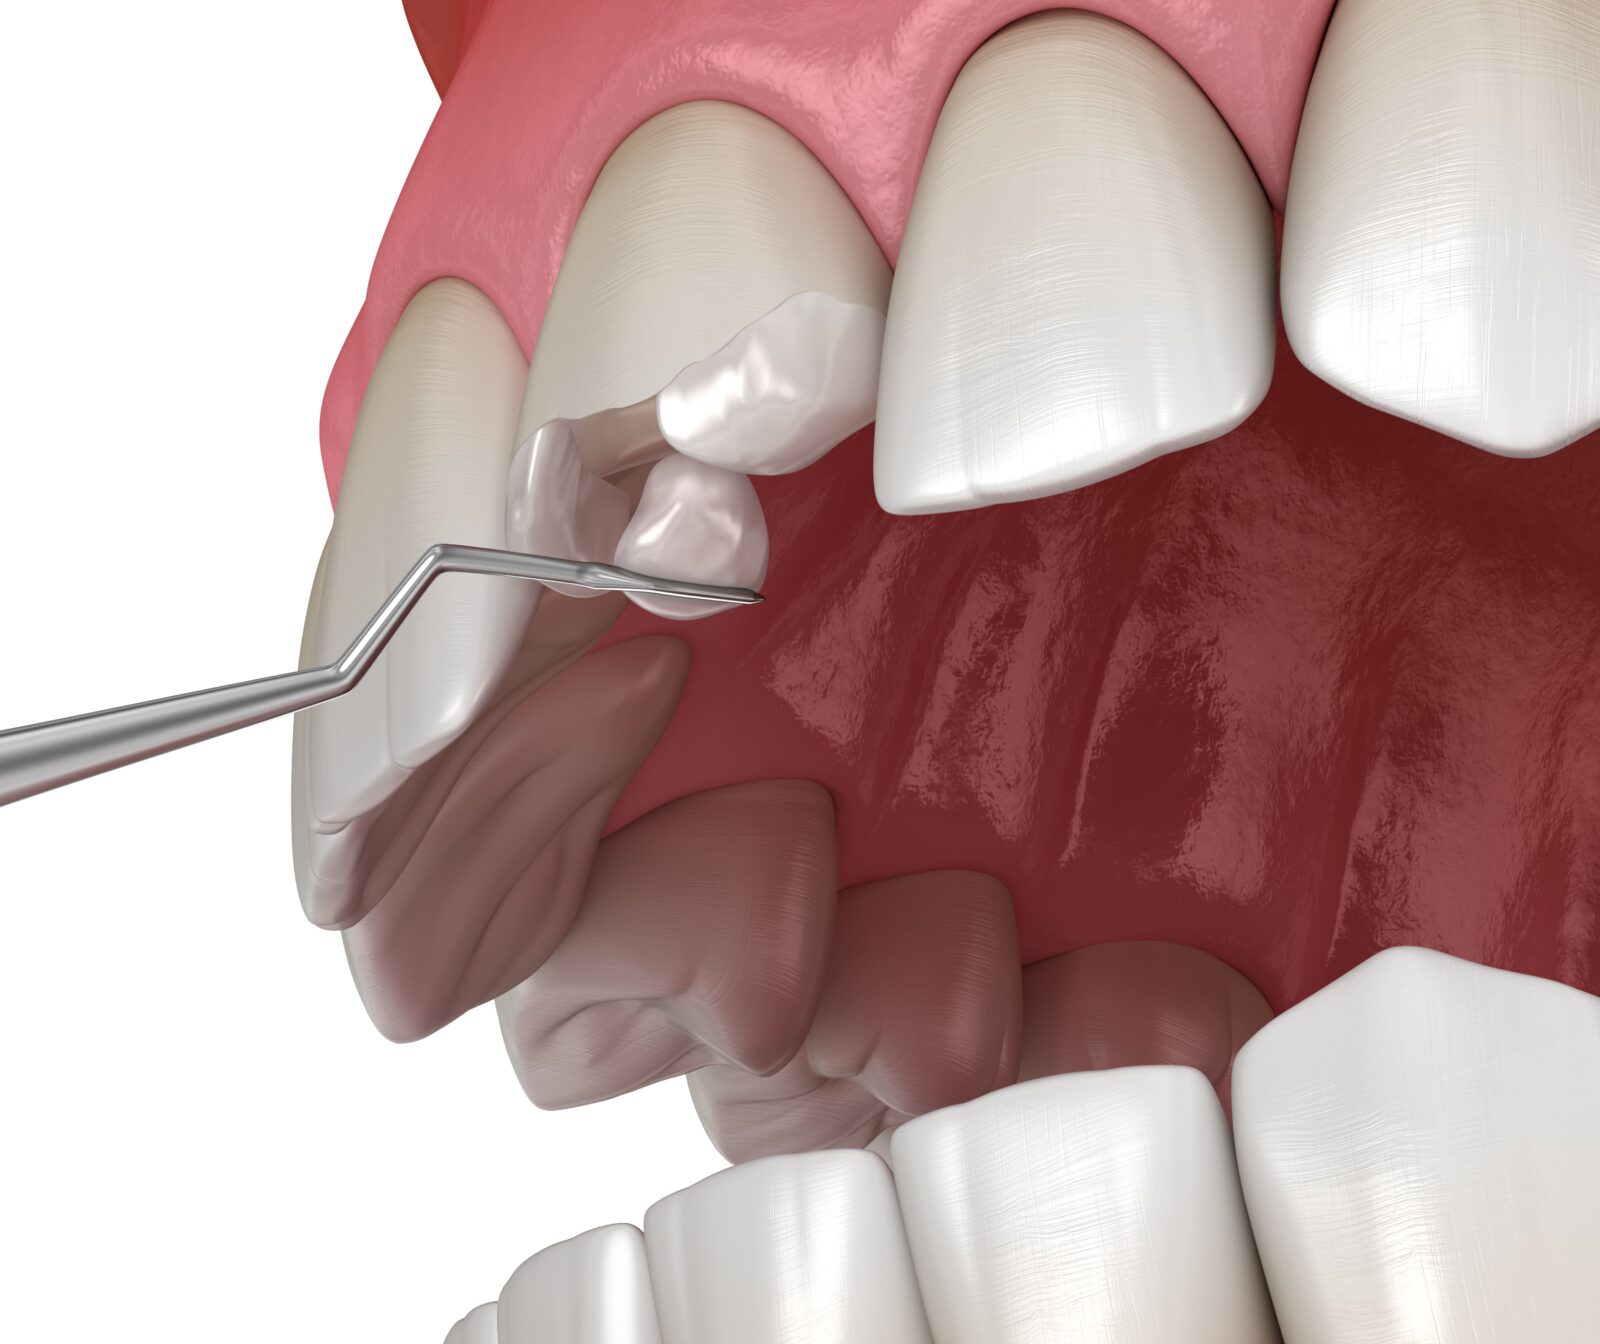 dental composite being used to repair broken tooth